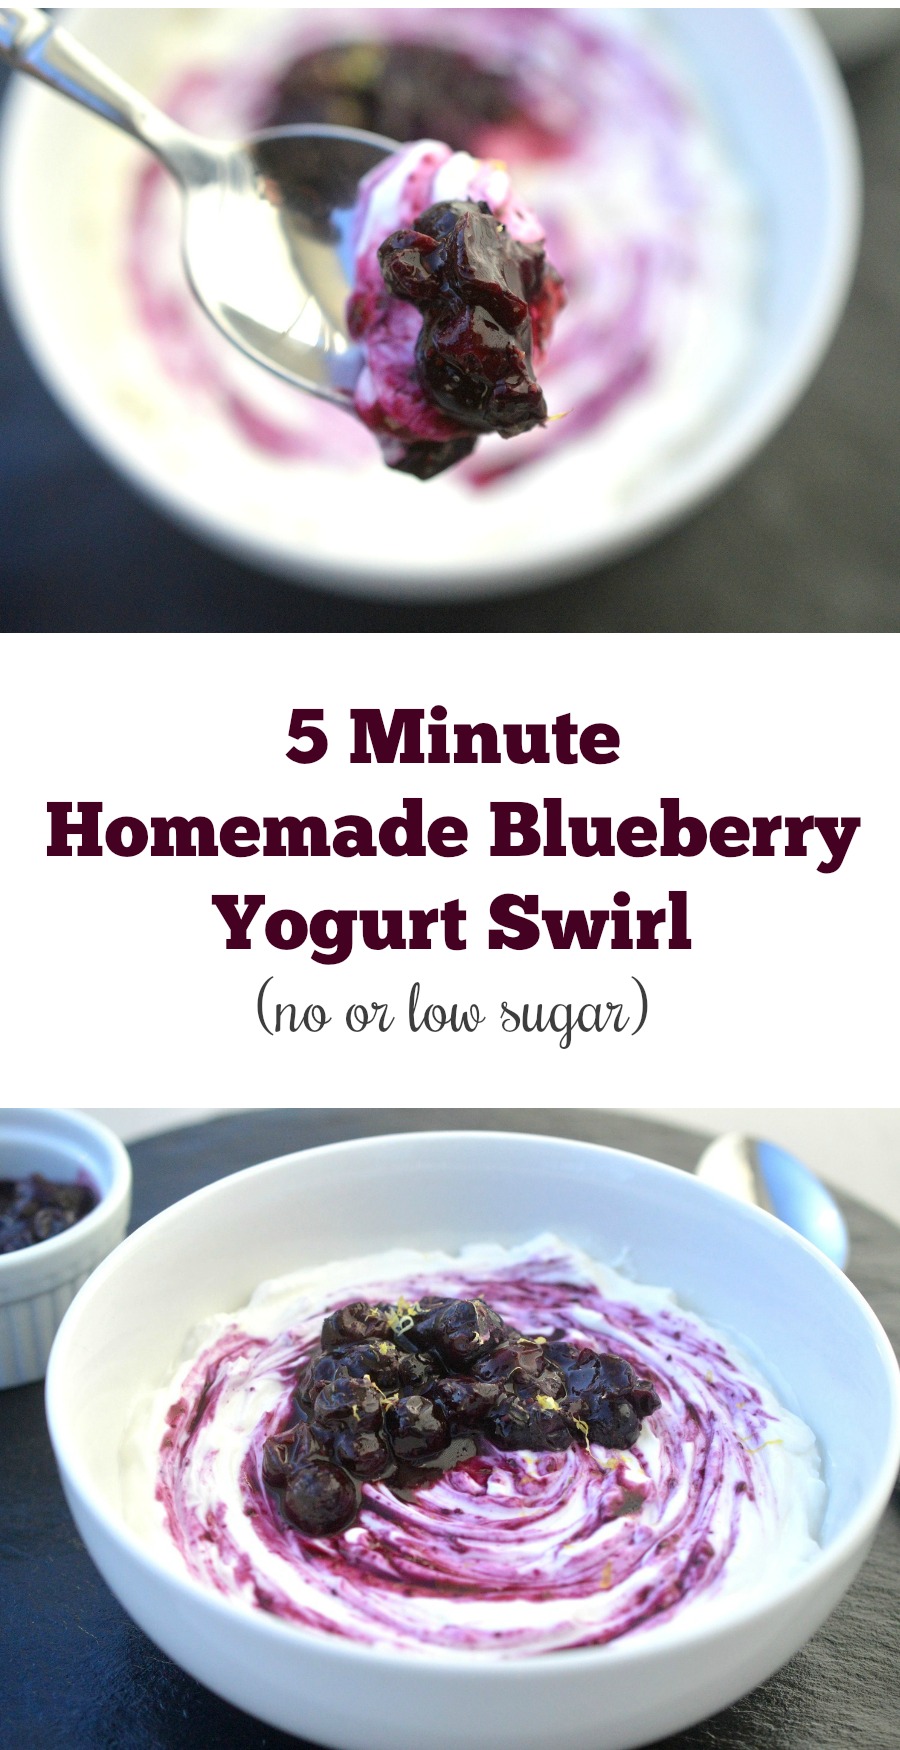 5 Minute Homemade Blueberry Yogurt Swirl 
Blueberry Compote swirled in yogurt